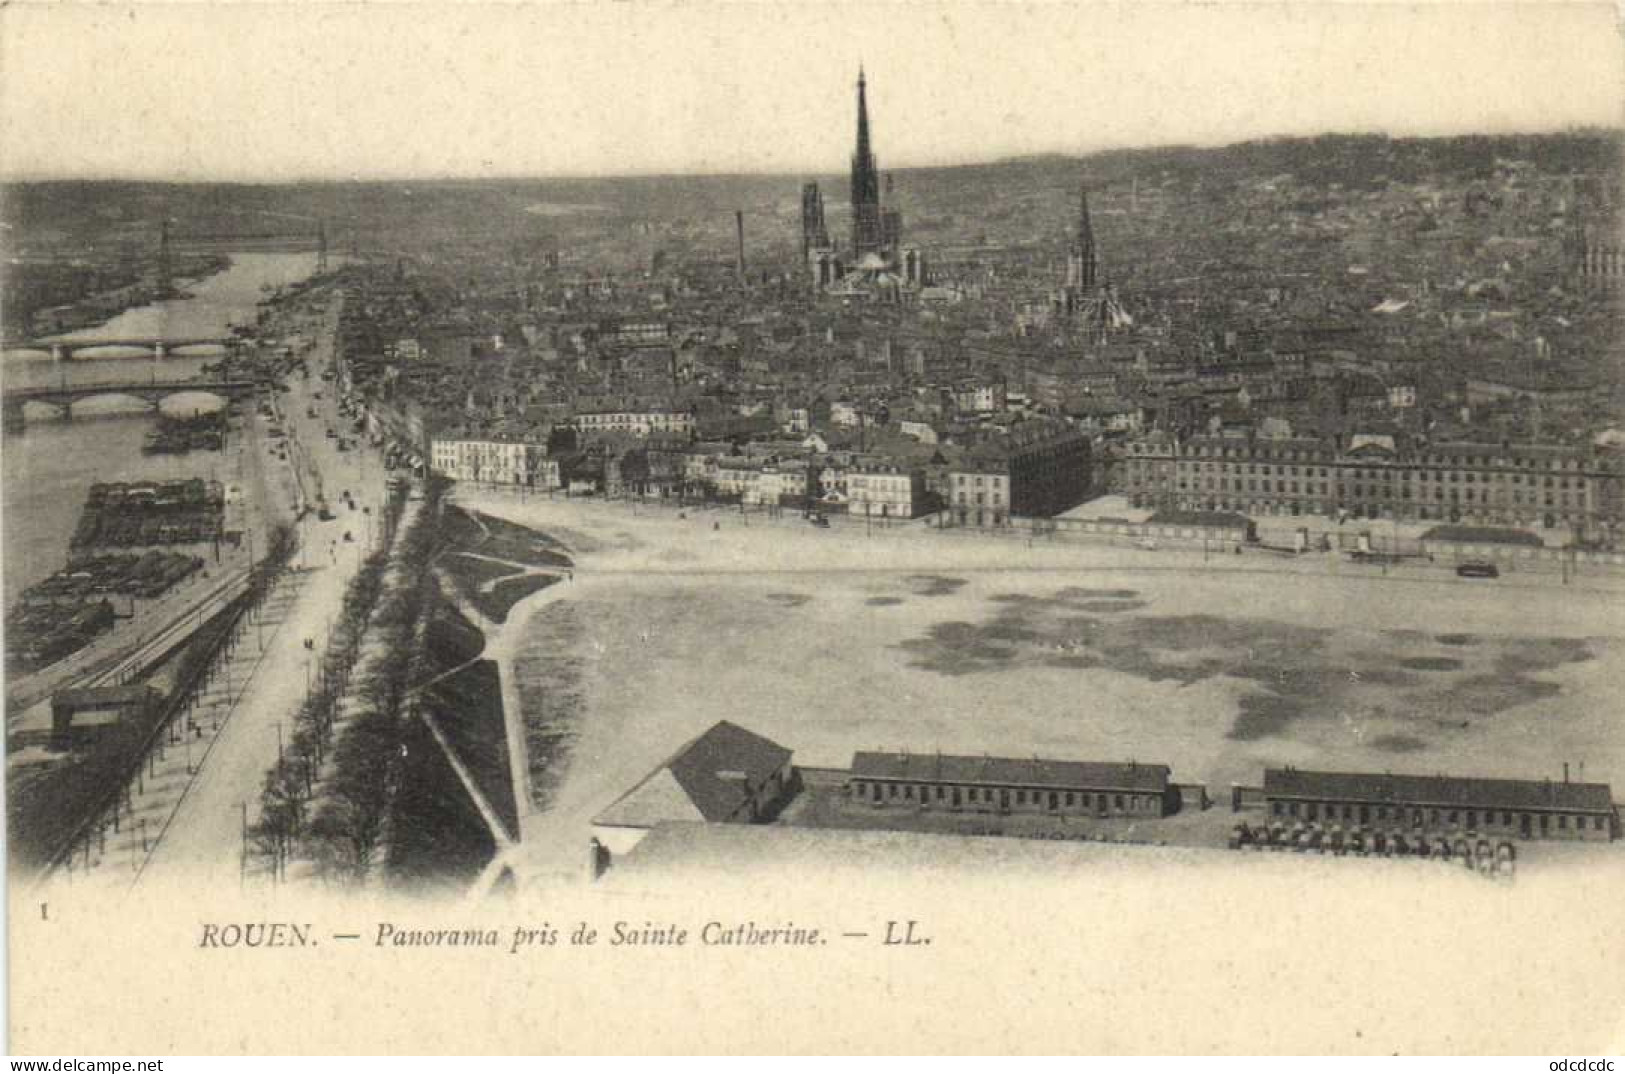 DESTOCKAGE Avant fermeture boutique BON LOT 100 CPA FRANCE Pionnières (1900 1904) A dos non partagé (toutes scannées )